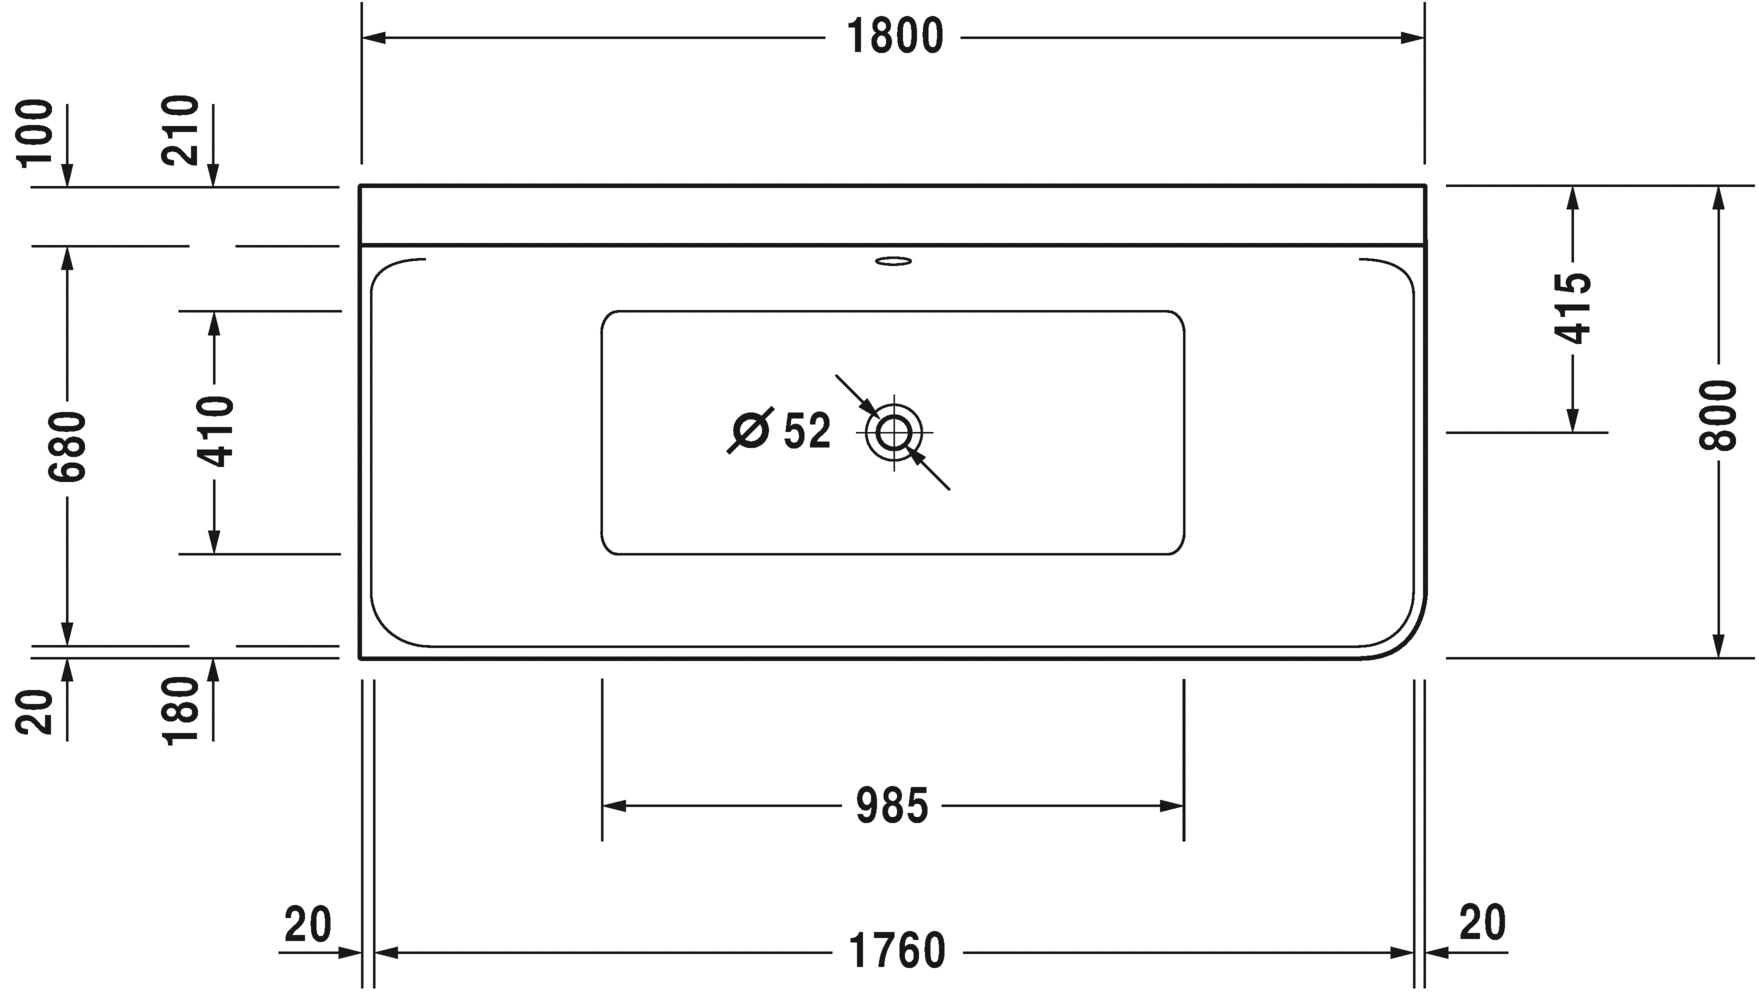 Акриловая ванна Duravit P3 Comforts 700379000000000 1800 х 800 c двумя наклонами для спины, с бесшовной акриловой панелью и рамой, угловая, белая (изделие снято с производства)